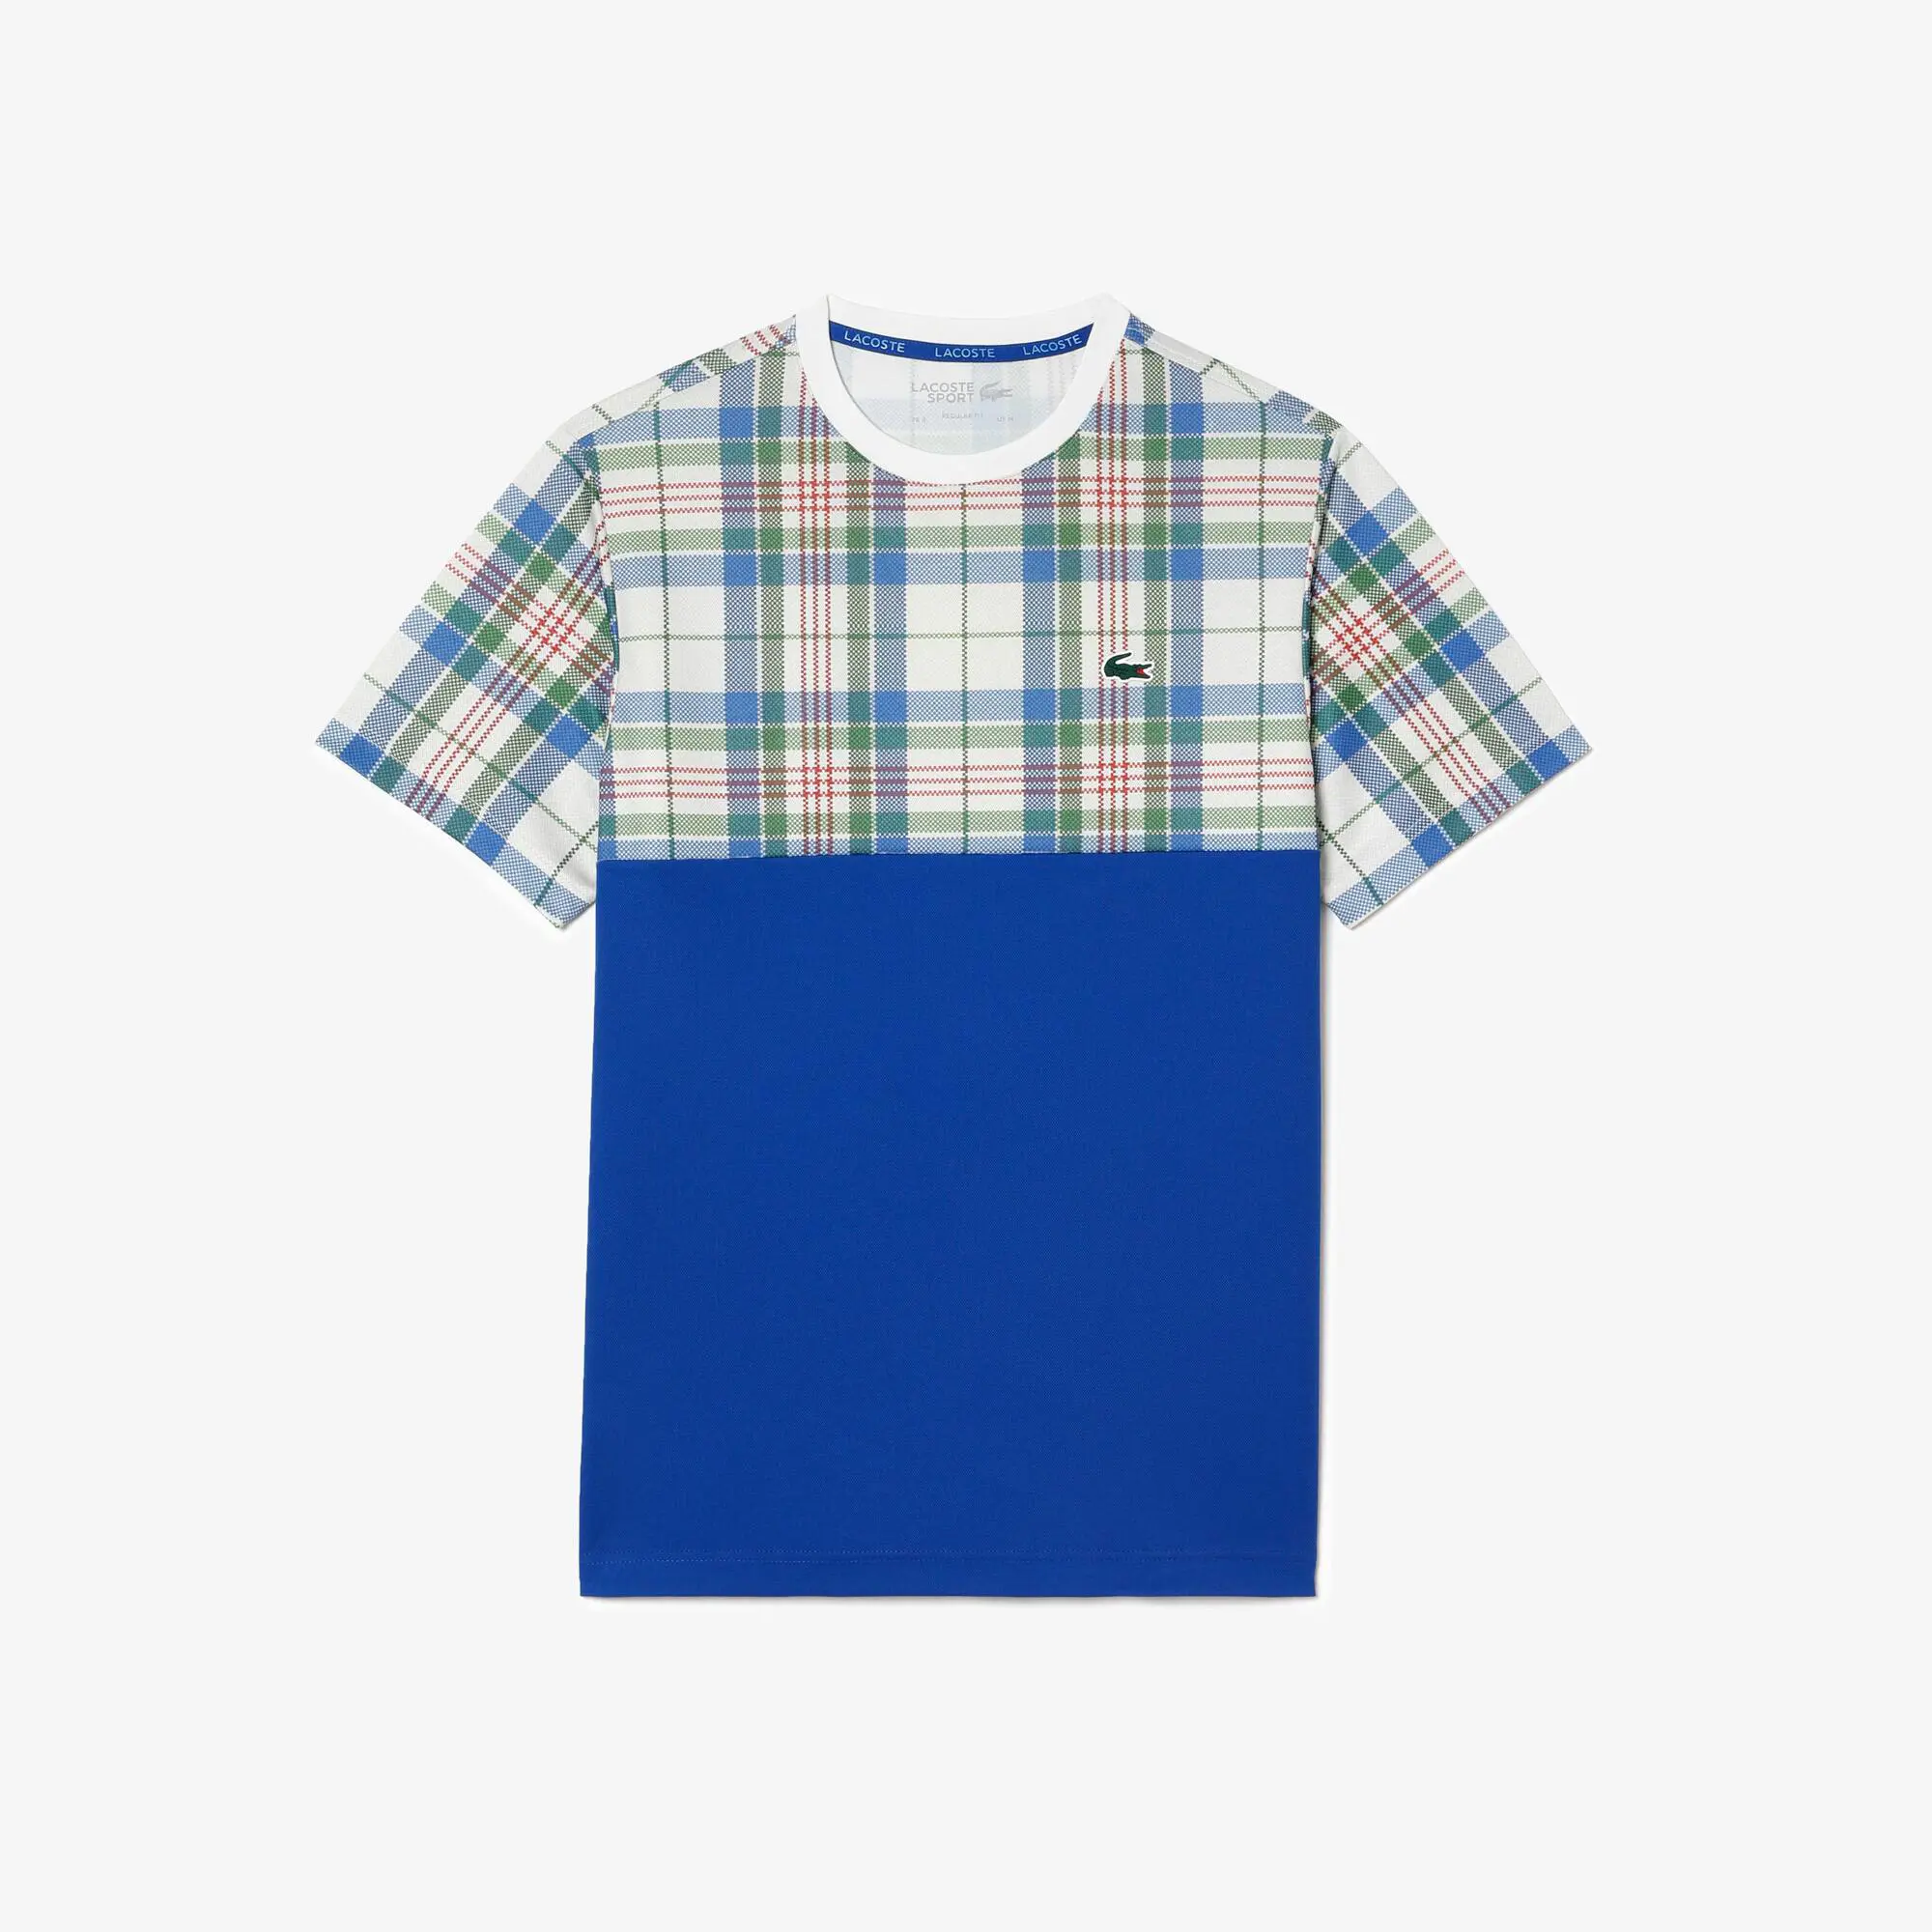 Lacoste Men’s Lacoste Tennis Regular Fit Check Print T-shirt. 2